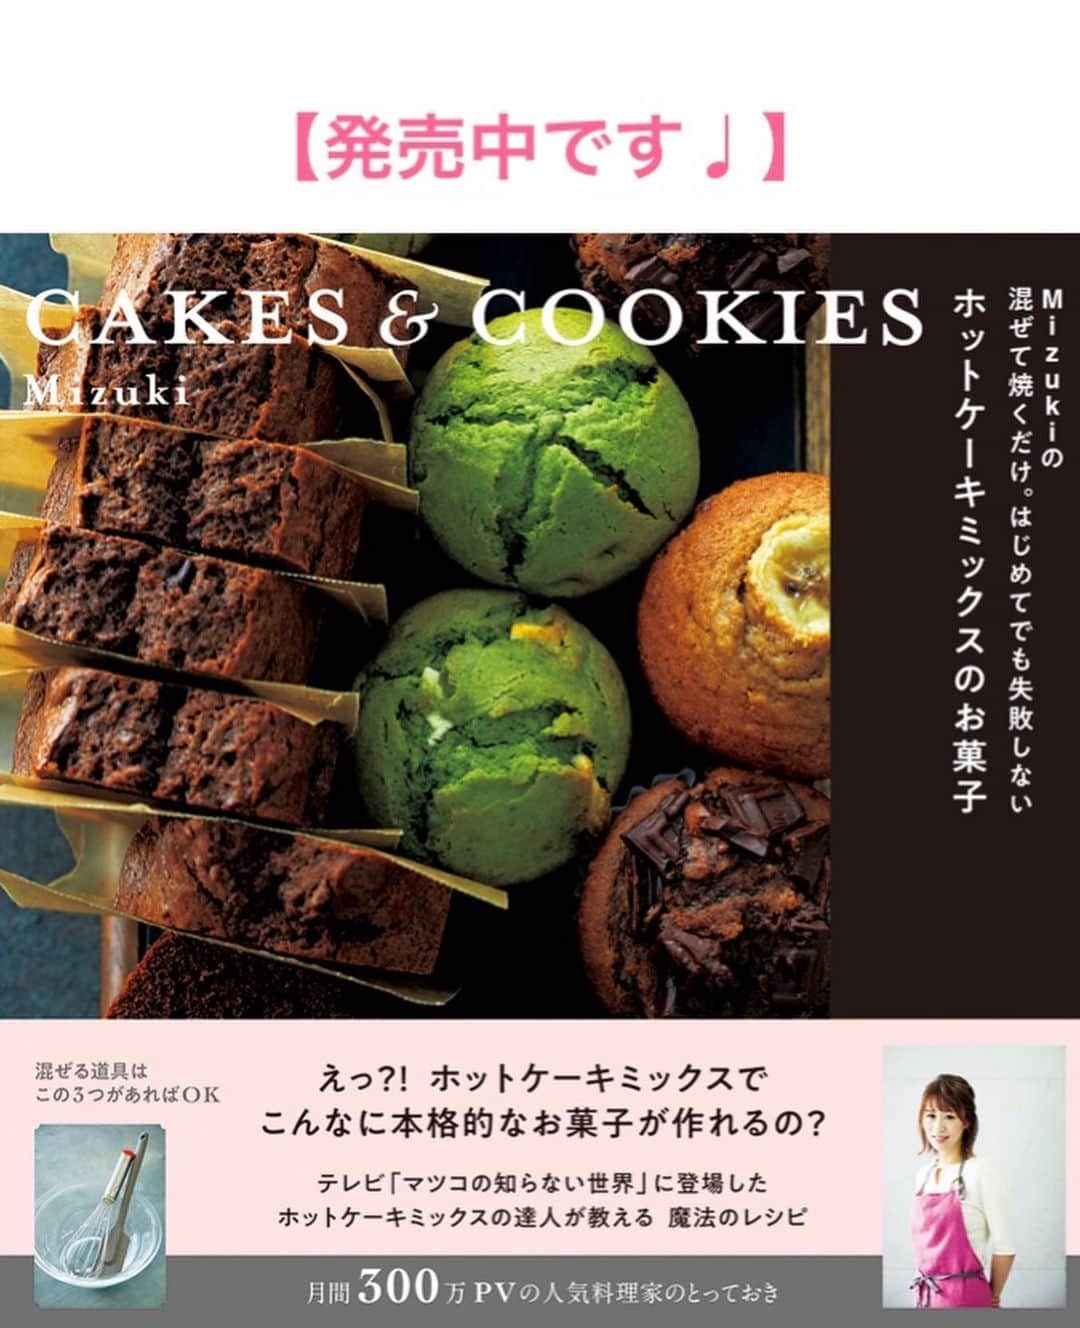 Mizuki【料理ブロガー・簡単レシピ】さんのインスタグラム写真 - (Mizuki【料理ブロガー・簡単レシピ】Instagram)「・﻿ 【レシピ】ーーーーーーーーーーー﻿ ♡煮るだけ簡単！ミートボール♡﻿ ーーーーーーーーーーーーーーーー﻿ ﻿ ﻿ ﻿ おはようございます(*^^*)﻿ ﻿ 今日ご紹介させていただくのは﻿ みんな大好きミートボール♡﻿ タネは一気に混ぜるだけ！﻿ 焼かない、揚げない、煮るだけ！の﻿ 超簡単お手軽レシピです(*´艸`)﻿ (しかもノンオイル♩)﻿ ﻿ 味付けは甘めのケチャップベースで﻿ 大人も子供も好きな味ですよ〜♡﻿ 冷蔵庫で3〜4日、冷凍もできるので﻿ よかったらお試し下さいね(*^^*)﻿ 作り置きやお弁当にもおすすめです♩﻿ ﻿ ﻿ ﻿ ーーーーーーーーーーーーーーーーーーーー﻿ 【2〜3人分】﻿ ●合びき肉...300g﻿ ●卵...1個﻿ ●パン粉...大2﻿ ●塩こしょう...少々﻿ 薄力粉...適量﻿ ☆水...100ml﻿ ☆ケチャップ...大5﻿ ☆中濃ソース...大2﻿ ☆みりん...大1﻿ ﻿ 1.ボウルに●を入れてよく混ぜ、3cm大に丸めて薄力粉をまぶす。﻿ 2.小さめのフライパンに☆を入れて火にかけ、煮立ったら1を加える。スプーンでたまに転がしながら、弱めの中火で8〜10分煮る。﻿ ーーーーーーーーーーーーーーーーーーーー﻿ ﻿ ﻿ ﻿ 《ポイント》﻿ ♦︎薄力粉は適当に薄くまぶせばOK♩﻿ ♦︎中濃ソースの代わりにウスターソースを使用しても♩﻿ ♦︎冷蔵庫で3〜4日日持ちし、冷凍もできます♩﻿ ﻿ ﻿ ﻿ ﻿ ﻿ ﻿ 🆕🆕🆕🆕🆕🆕🆕🆕🆕🆕﻿ 【🎥YouTube更新しました🎥】﻿ (＊ハイライトから飛べます♩)﻿ ↓﻿ 🍕世界一簡単なホケミピザ﻿ 🧁ホケミで！クッキー&クリームマフィン﻿ 🍳揉んで焼くだけ！やみつきチキン﻿ 🌭材料4つ！アメリカンドッグ﻿ ﻿ ﻿ ﻿ ﻿ ﻿ 5刷重版しました🔻﻿ 本当にありがとうございます🙇‍♀️﻿ ＿＿＿＿＿＿＿＿＿＿＿＿＿＿＿＿＿＿＿﻿ 📕\ \ 新刊発売中 / /📕﻿ 簡単・時短！ 毎日のごはんがラクになる﻿ ✨🦋 【 #Mizukiの今どき和食 】🦋✨﻿ ＿＿＿＿＿＿＿＿＿＿＿＿＿＿＿＿＿＿＿﻿ なるべく少ない材料で﻿ 手間も時間も省きながら﻿ 簡単にできるおいしい和食レシピ♩﻿ 簡単に失敗なくマスターできる一冊で﻿ もっと気軽に、カジュアルに﻿ 和食を楽しんで下さいね(*^^*)﻿ ＿＿＿＿＿＿＿＿＿＿＿＿＿＿＿＿＿＿＿﻿ ﻿ ﻿ ﻿ ＿＿＿＿＿＿＿＿＿＿＿＿＿＿＿＿＿﻿ 🎀6刷重版しました🎀﻿ 混ぜて焼くだけ。はじめてでも失敗しない！﻿ 【#ホットケーキミックスのお菓子 】﻿ ﻿ 一冊まるっとホケミスイーツ♩﻿ 普段のおやつから﻿ 特別な日にも使えるレシピを﻿ この一冊に詰め込みました(*^^*)﻿ ホットケーキミックスを使えば﻿ 簡単に本格的なお菓子が作れますよ♡﻿ ＿＿＿＿＿＿＿＿＿＿＿＿＿＿＿＿＿﻿ ﻿ ⭐️ストーリー、ハイライト、プロフ画面に﻿ 本のURLを貼らせていただいております♩﻿ →(@mizuki_31cafe )﻿ ﻿ ﻿ ﻿ ﻿ #ミートボール#お弁当#作り置き#おかず#ひき肉#ノンオイル#ヘルシー#うちで過ごそう#おうち時間#Mizuki#簡単レシピ#時短レシピ#節約レシピ#料理#レシピ#フーディーテーブル#マカロニメイト#おうちごはん#デリスタグラマー#料理好きな人と繋がりたい#おうちごはんlover#foodpic#follow#cooking#recipe#lin_stagrammer#stayhome#煮るだけミートボールm」6月27日 7時27分 - mizuki_31cafe